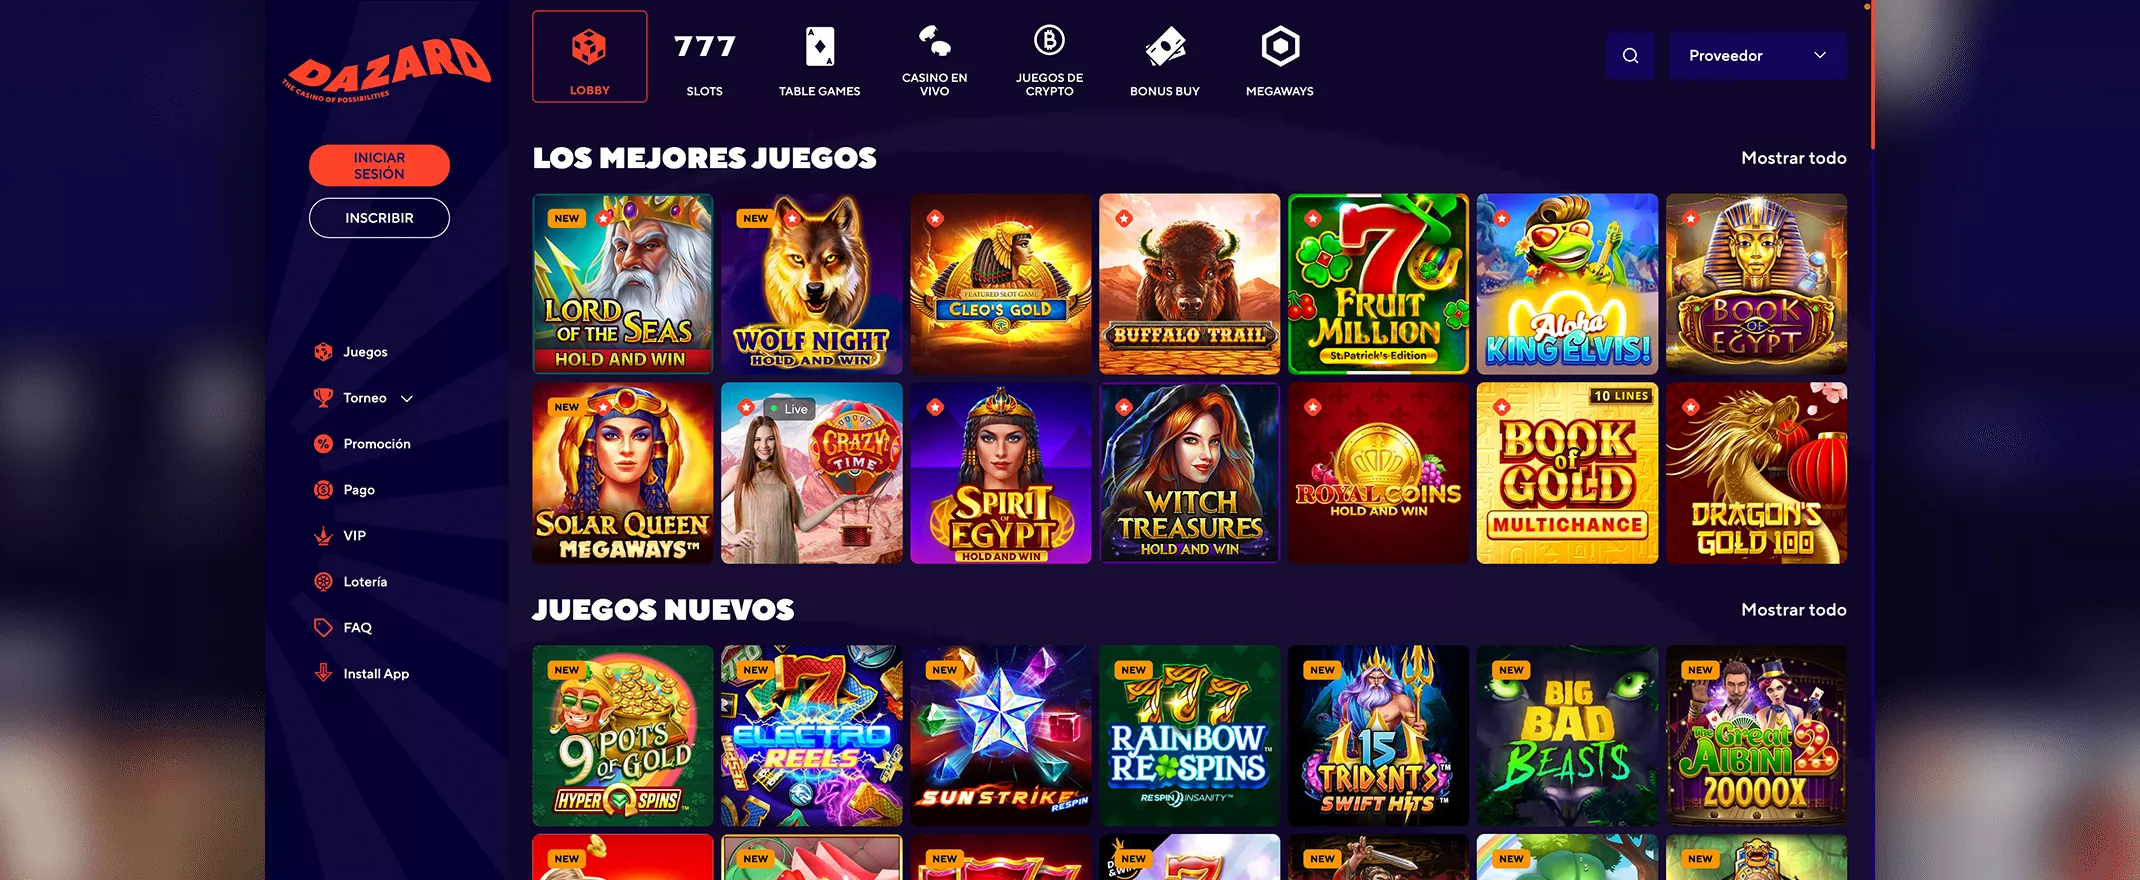 Captura de pantalla de Dazard Casino